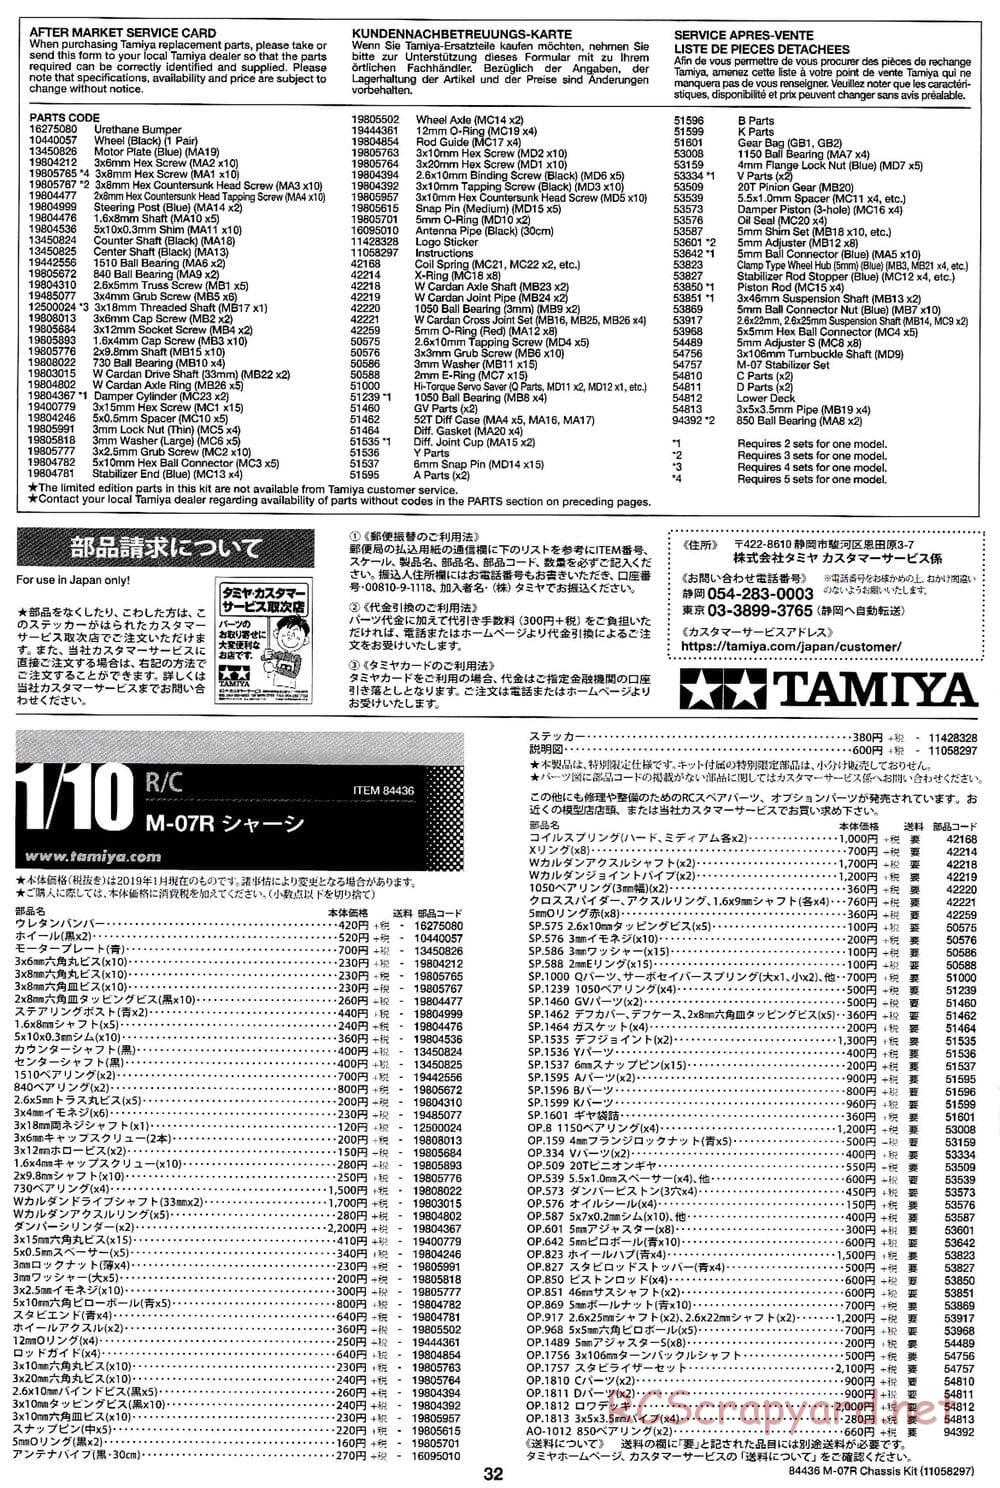 Tamiya - M-07R Chassis - Manual - Page 32